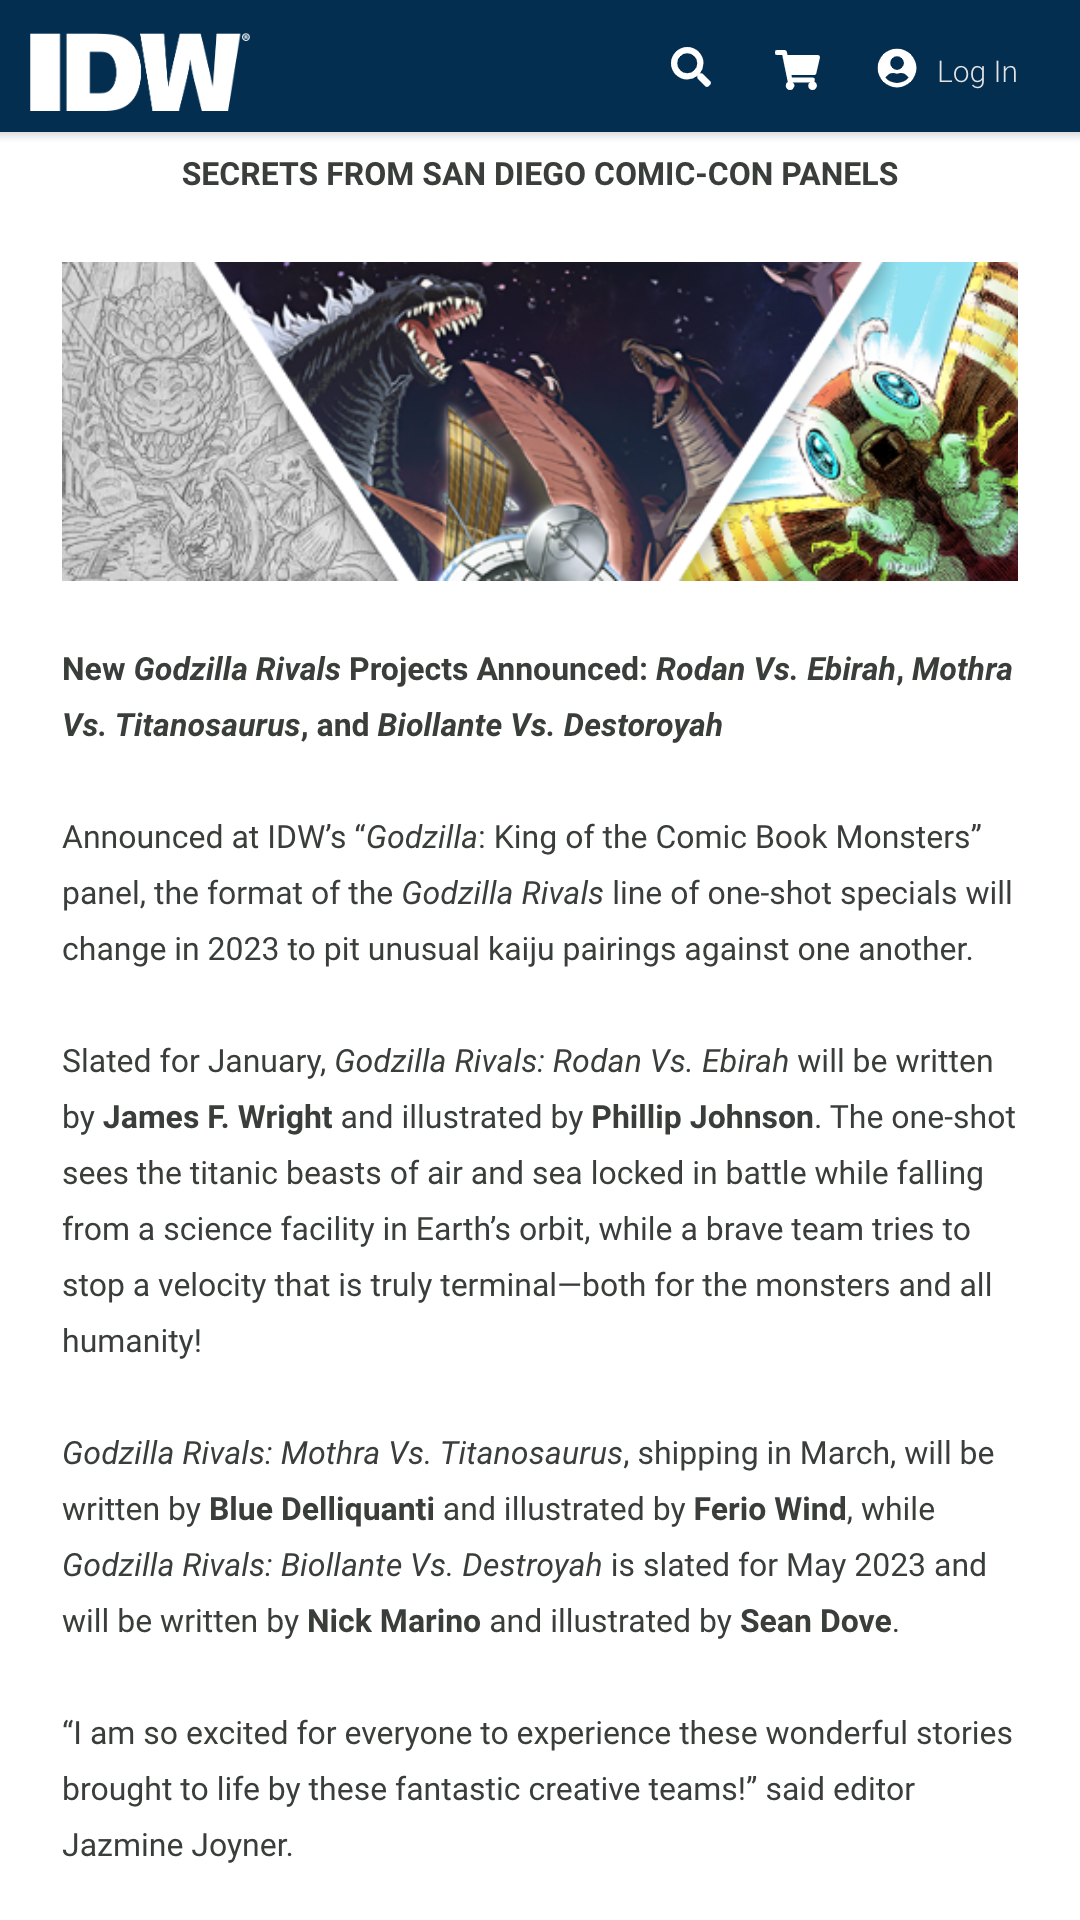 IDW Godzilla Rivals comics 2023